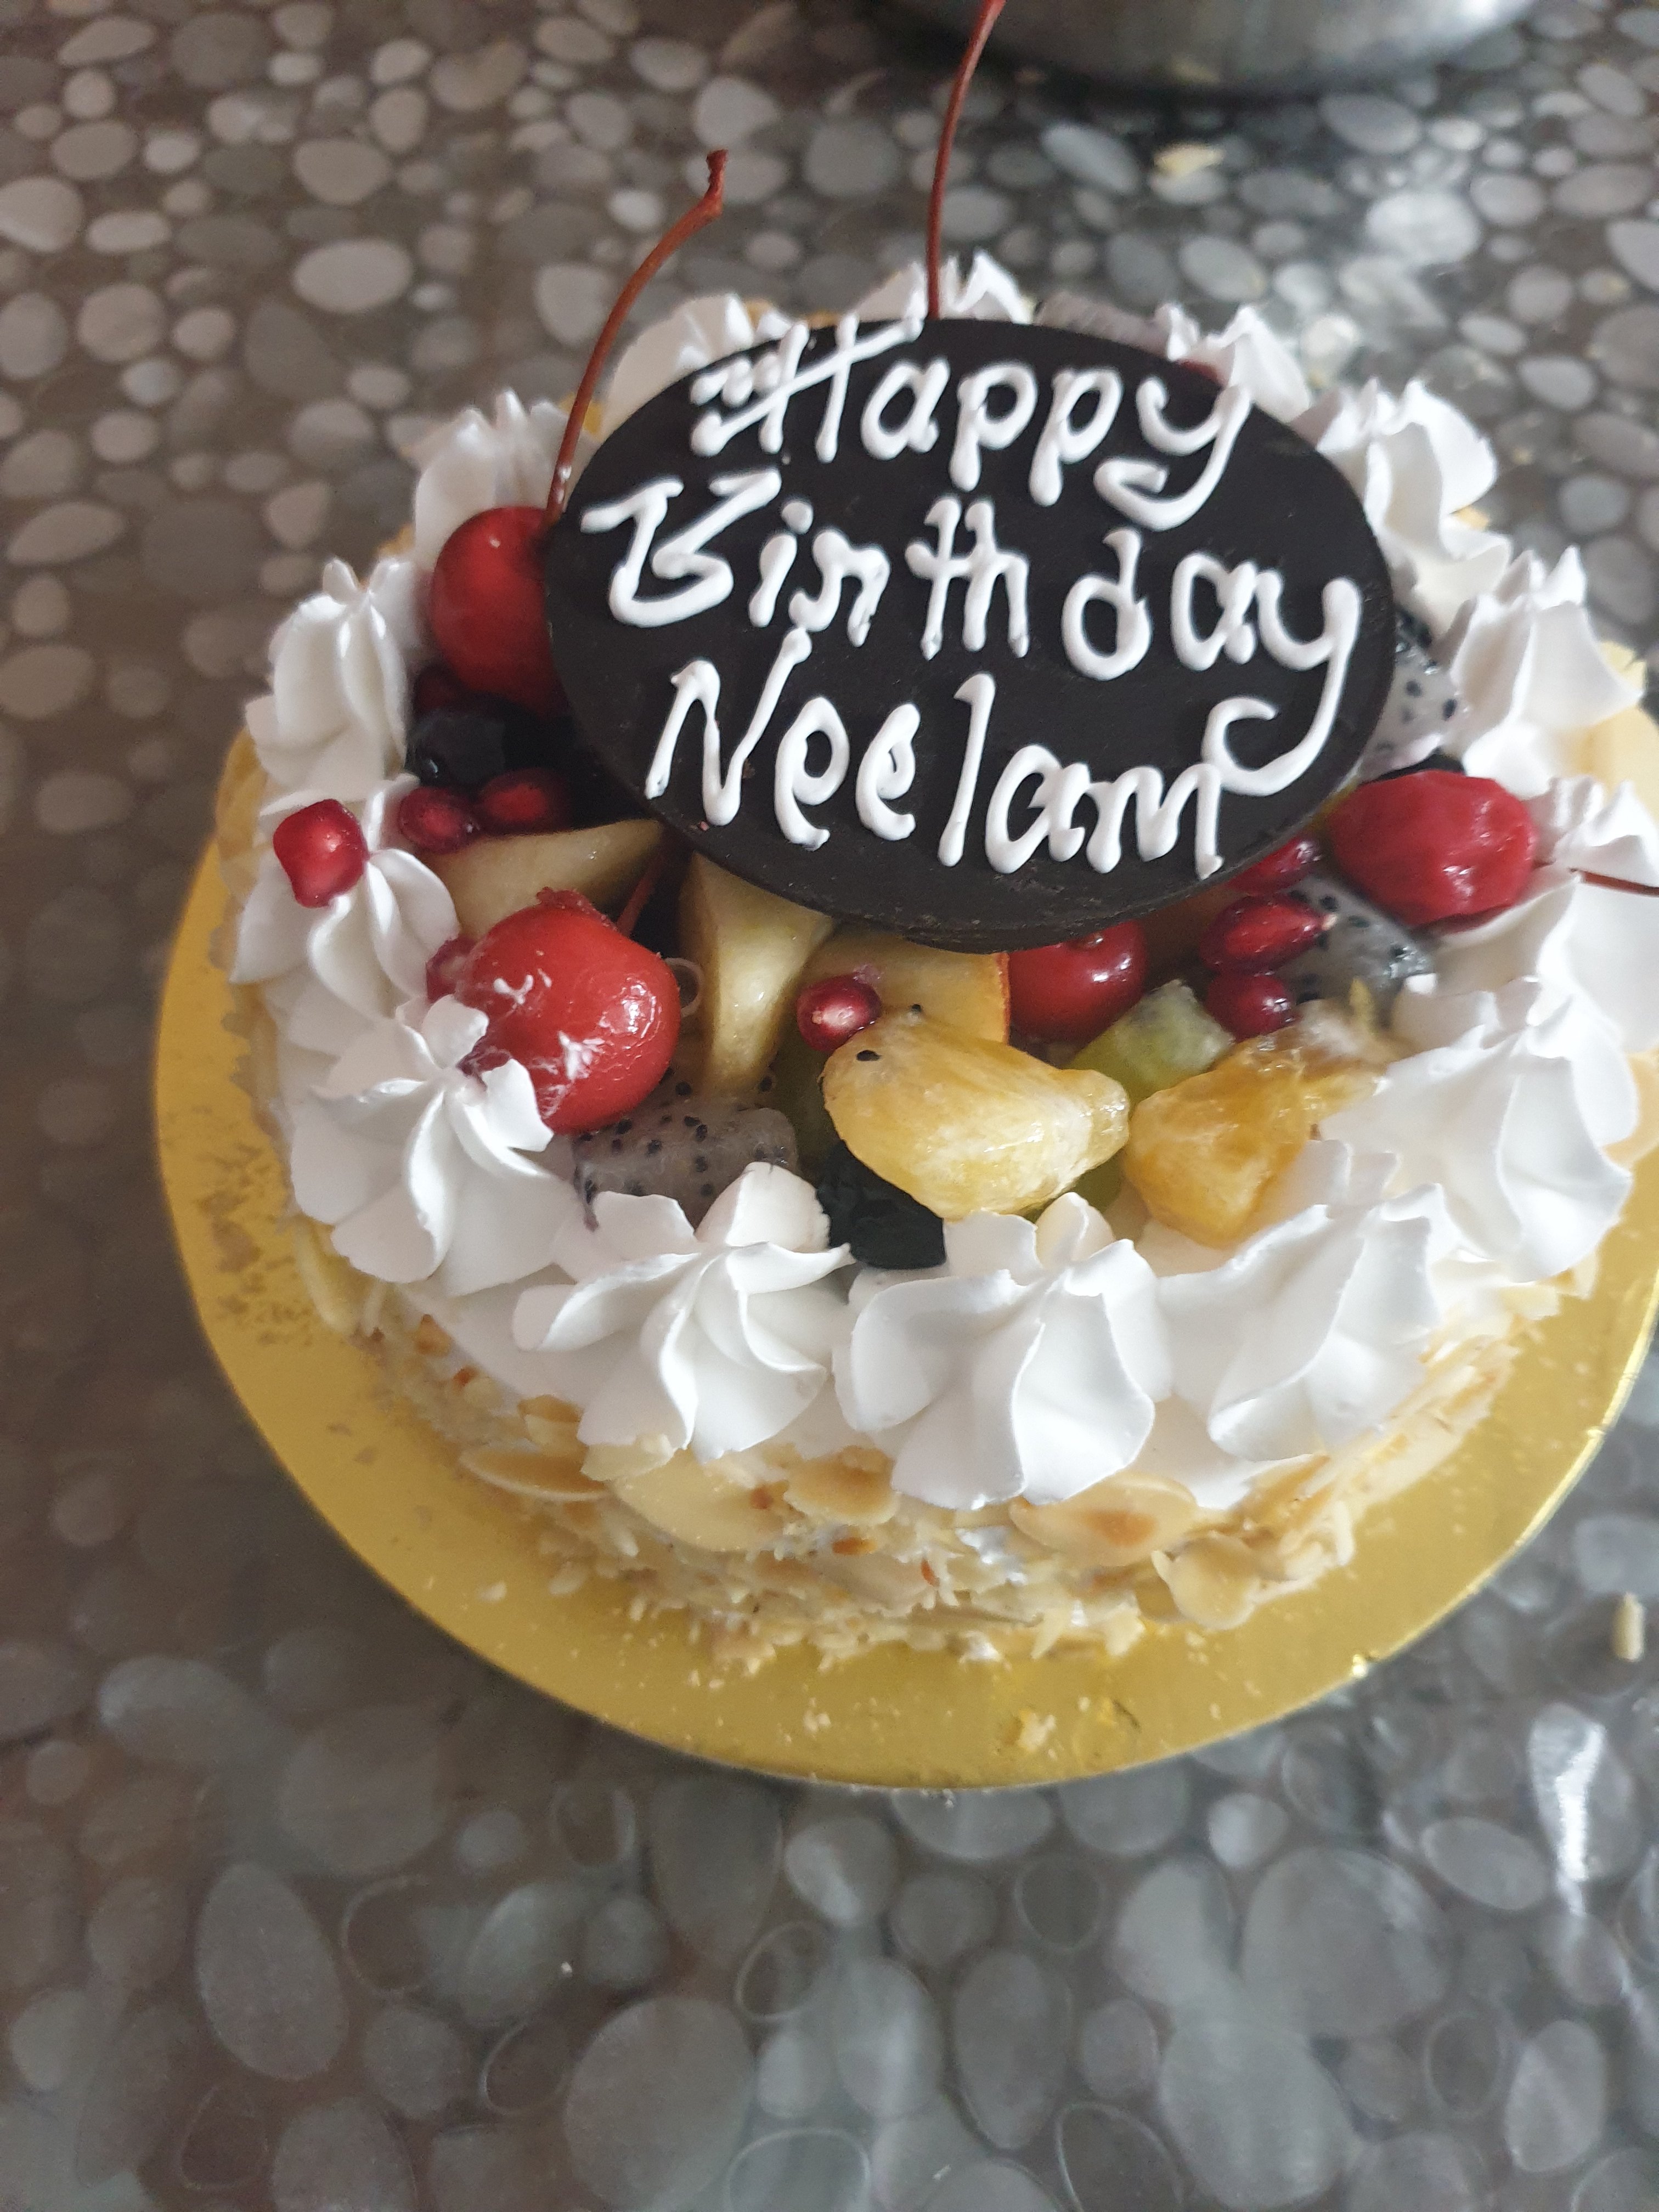 100+ HD Happy Birthday Neelam Cake Images And shayari